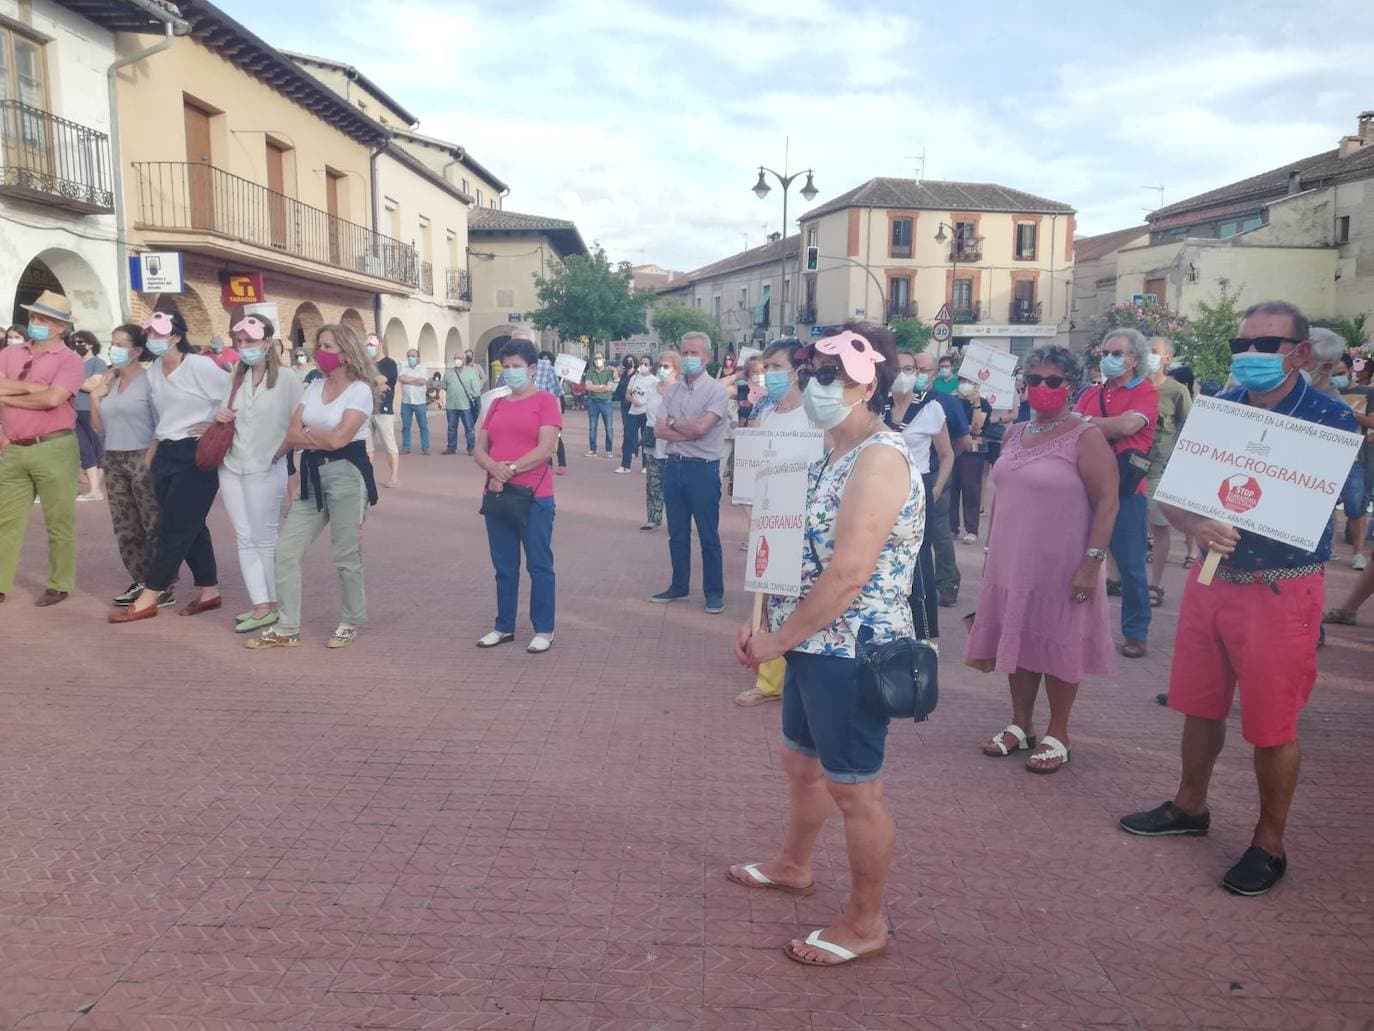 Un centenar de personas protestan en Santa María contra la construcción de macrogranjas